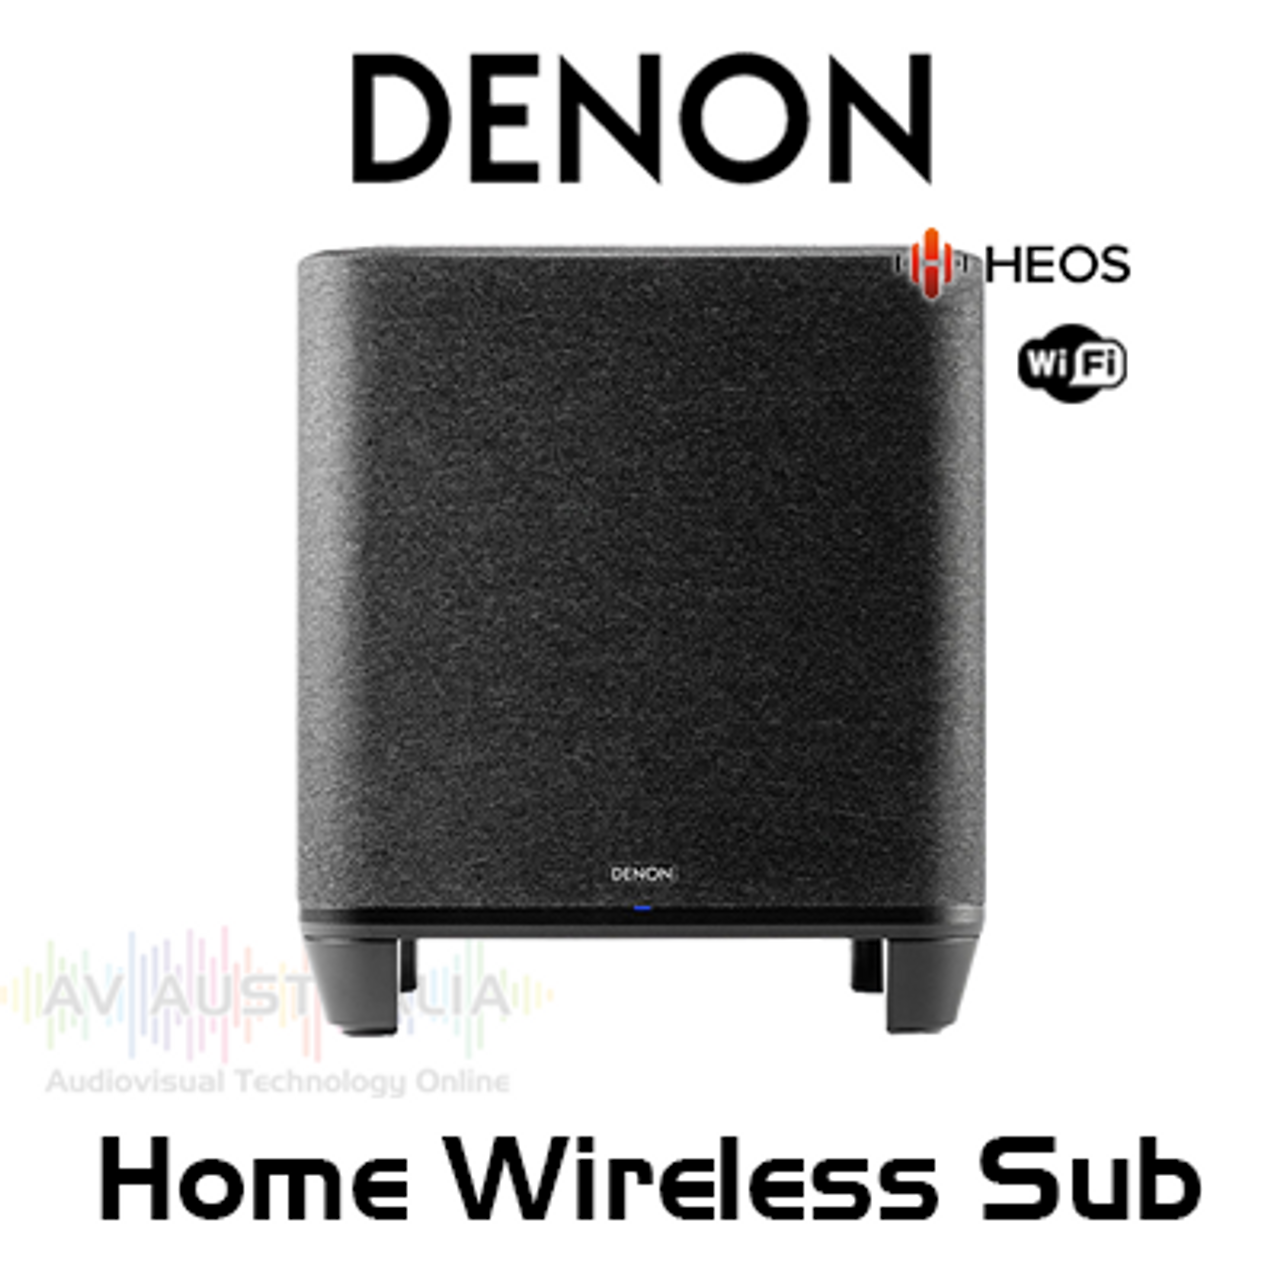 Denon Home Wireless Subwoofer with HEOS Built-in | AV Australia Online